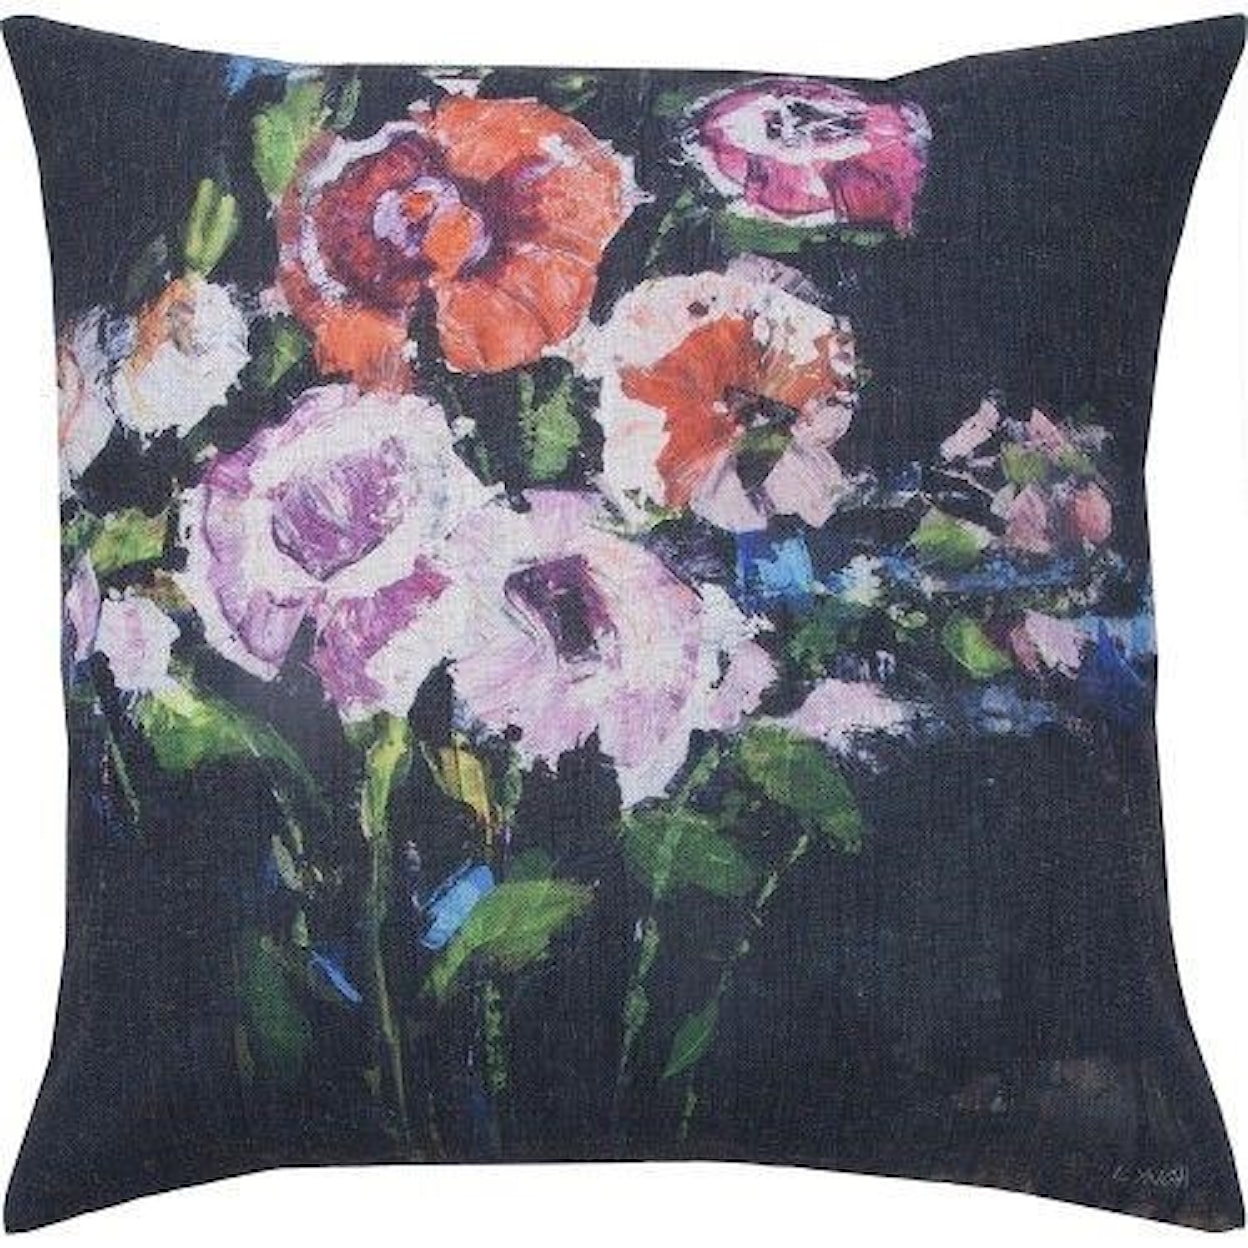 Ren-Wil Pillow Doris Flower Pillow